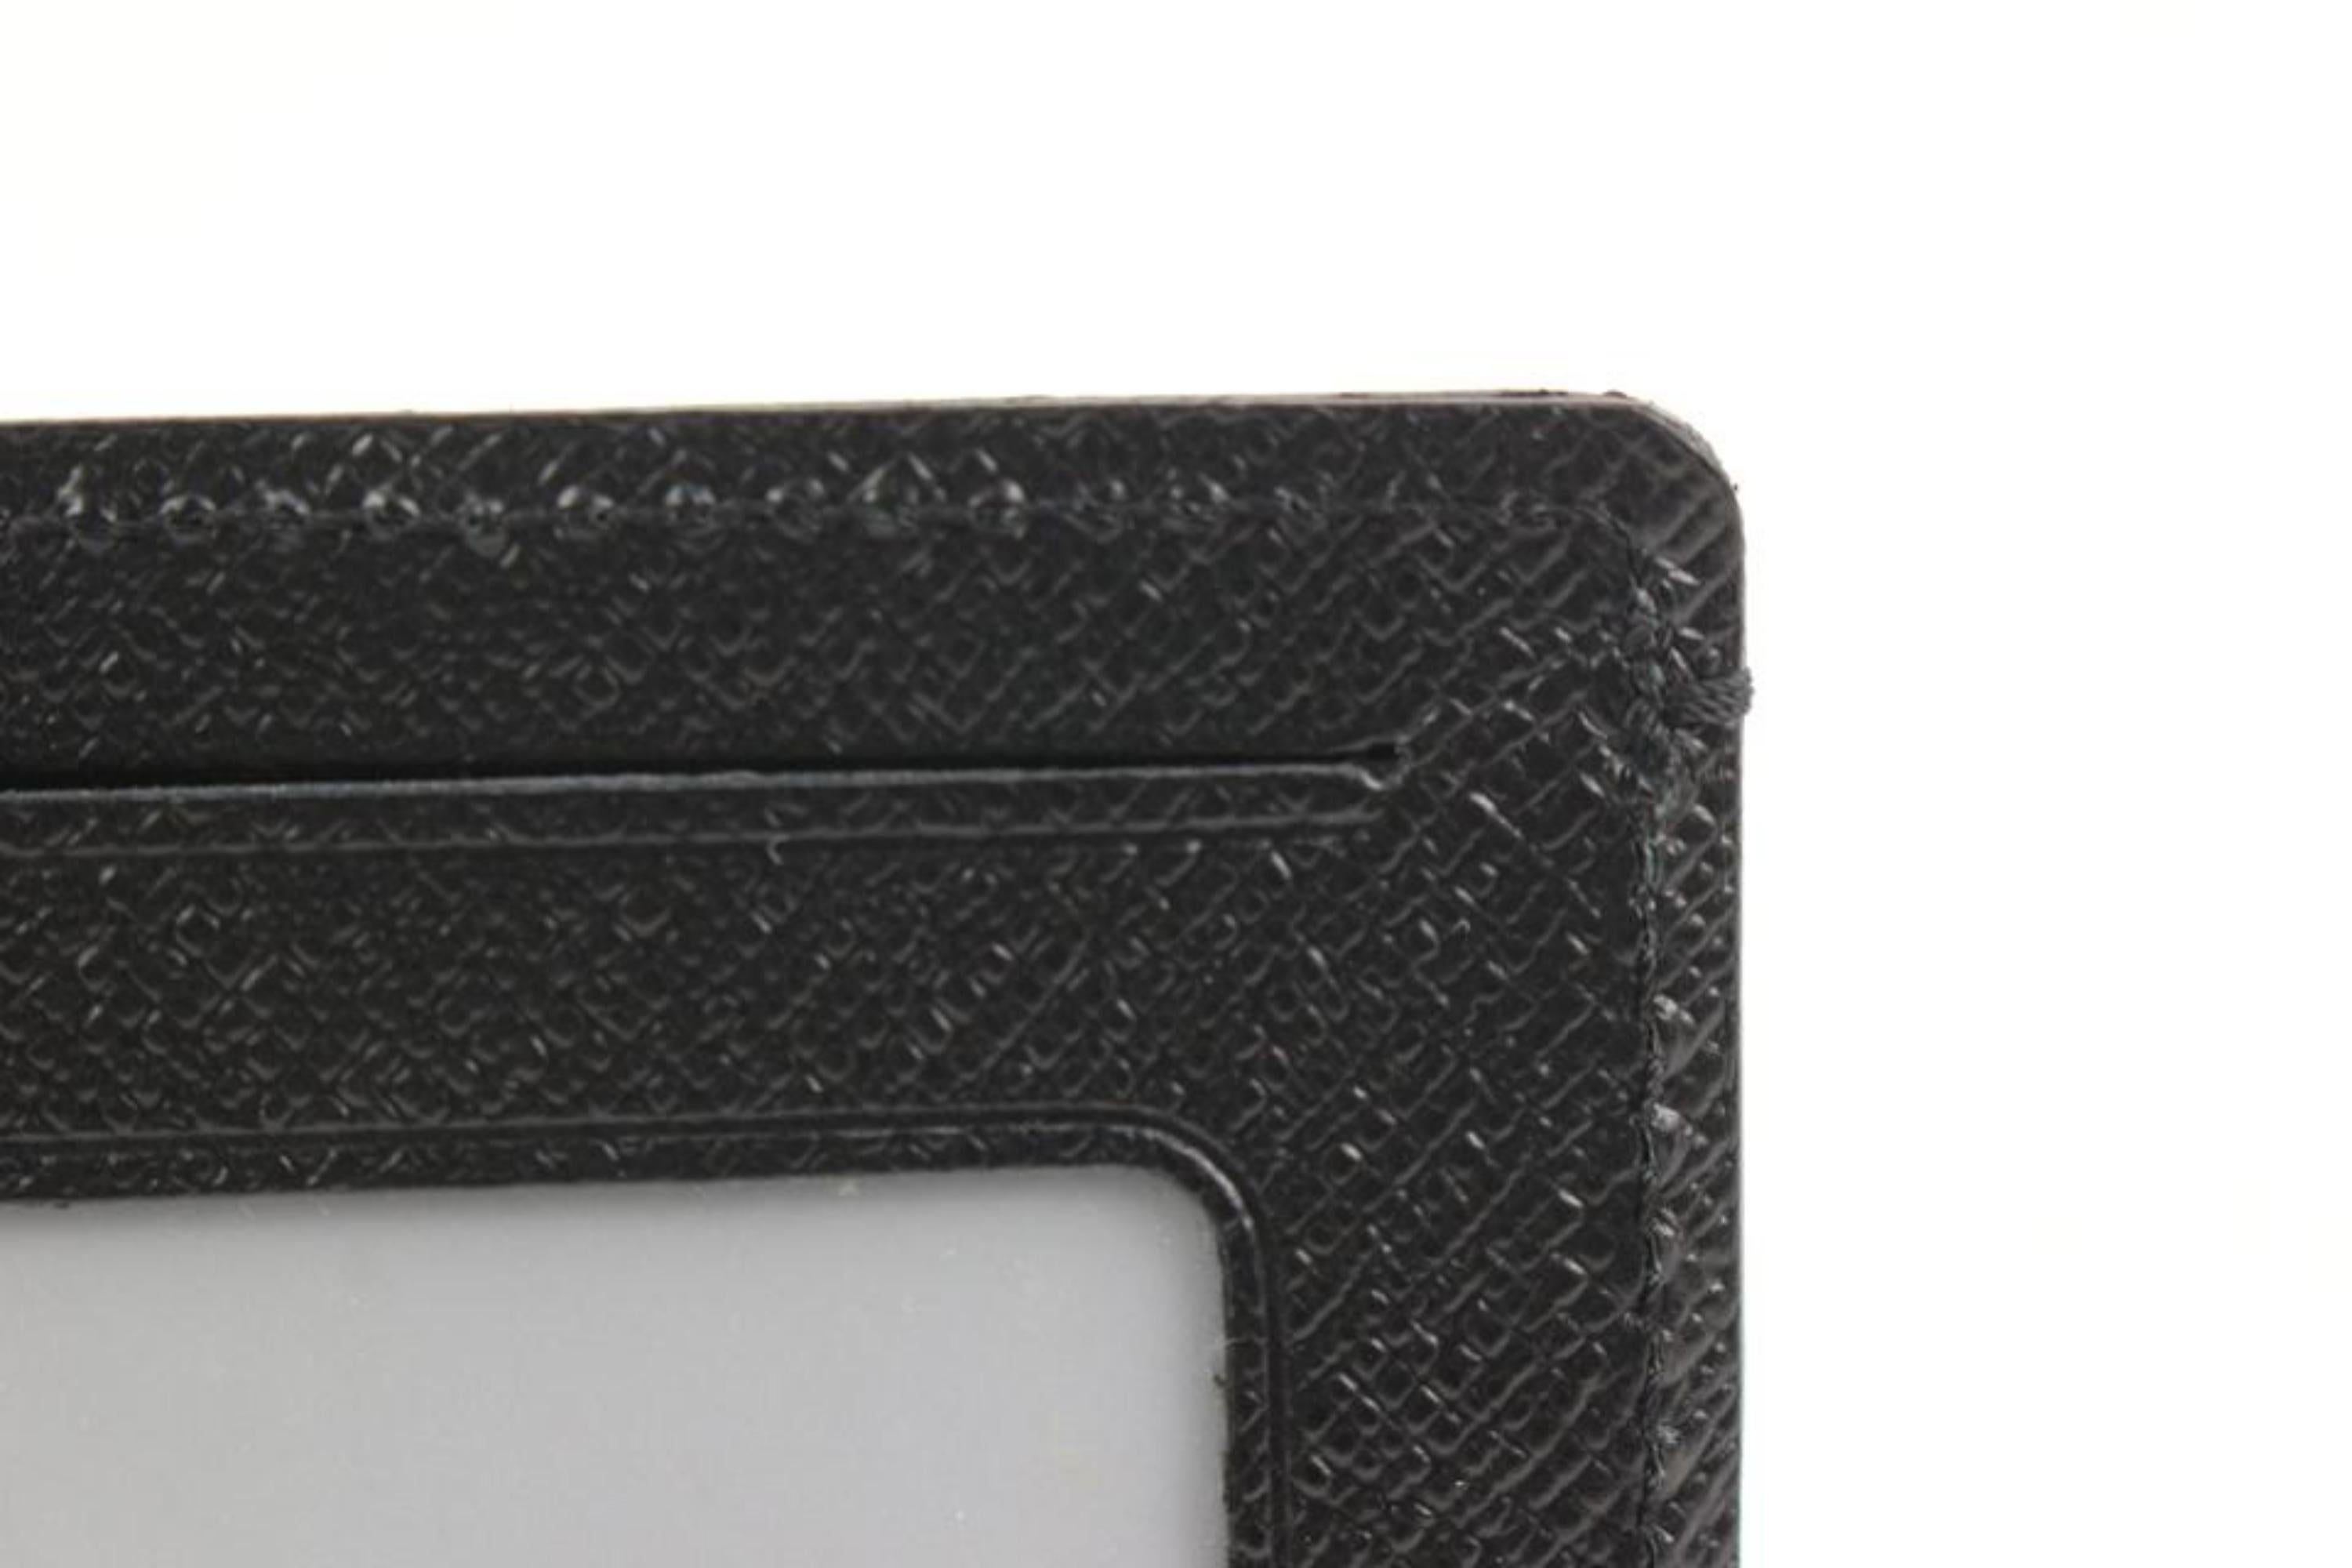 Louis Vuitton Black x Grey Damier Graphite Card Case Wallet Insert Holder 9lv321 4